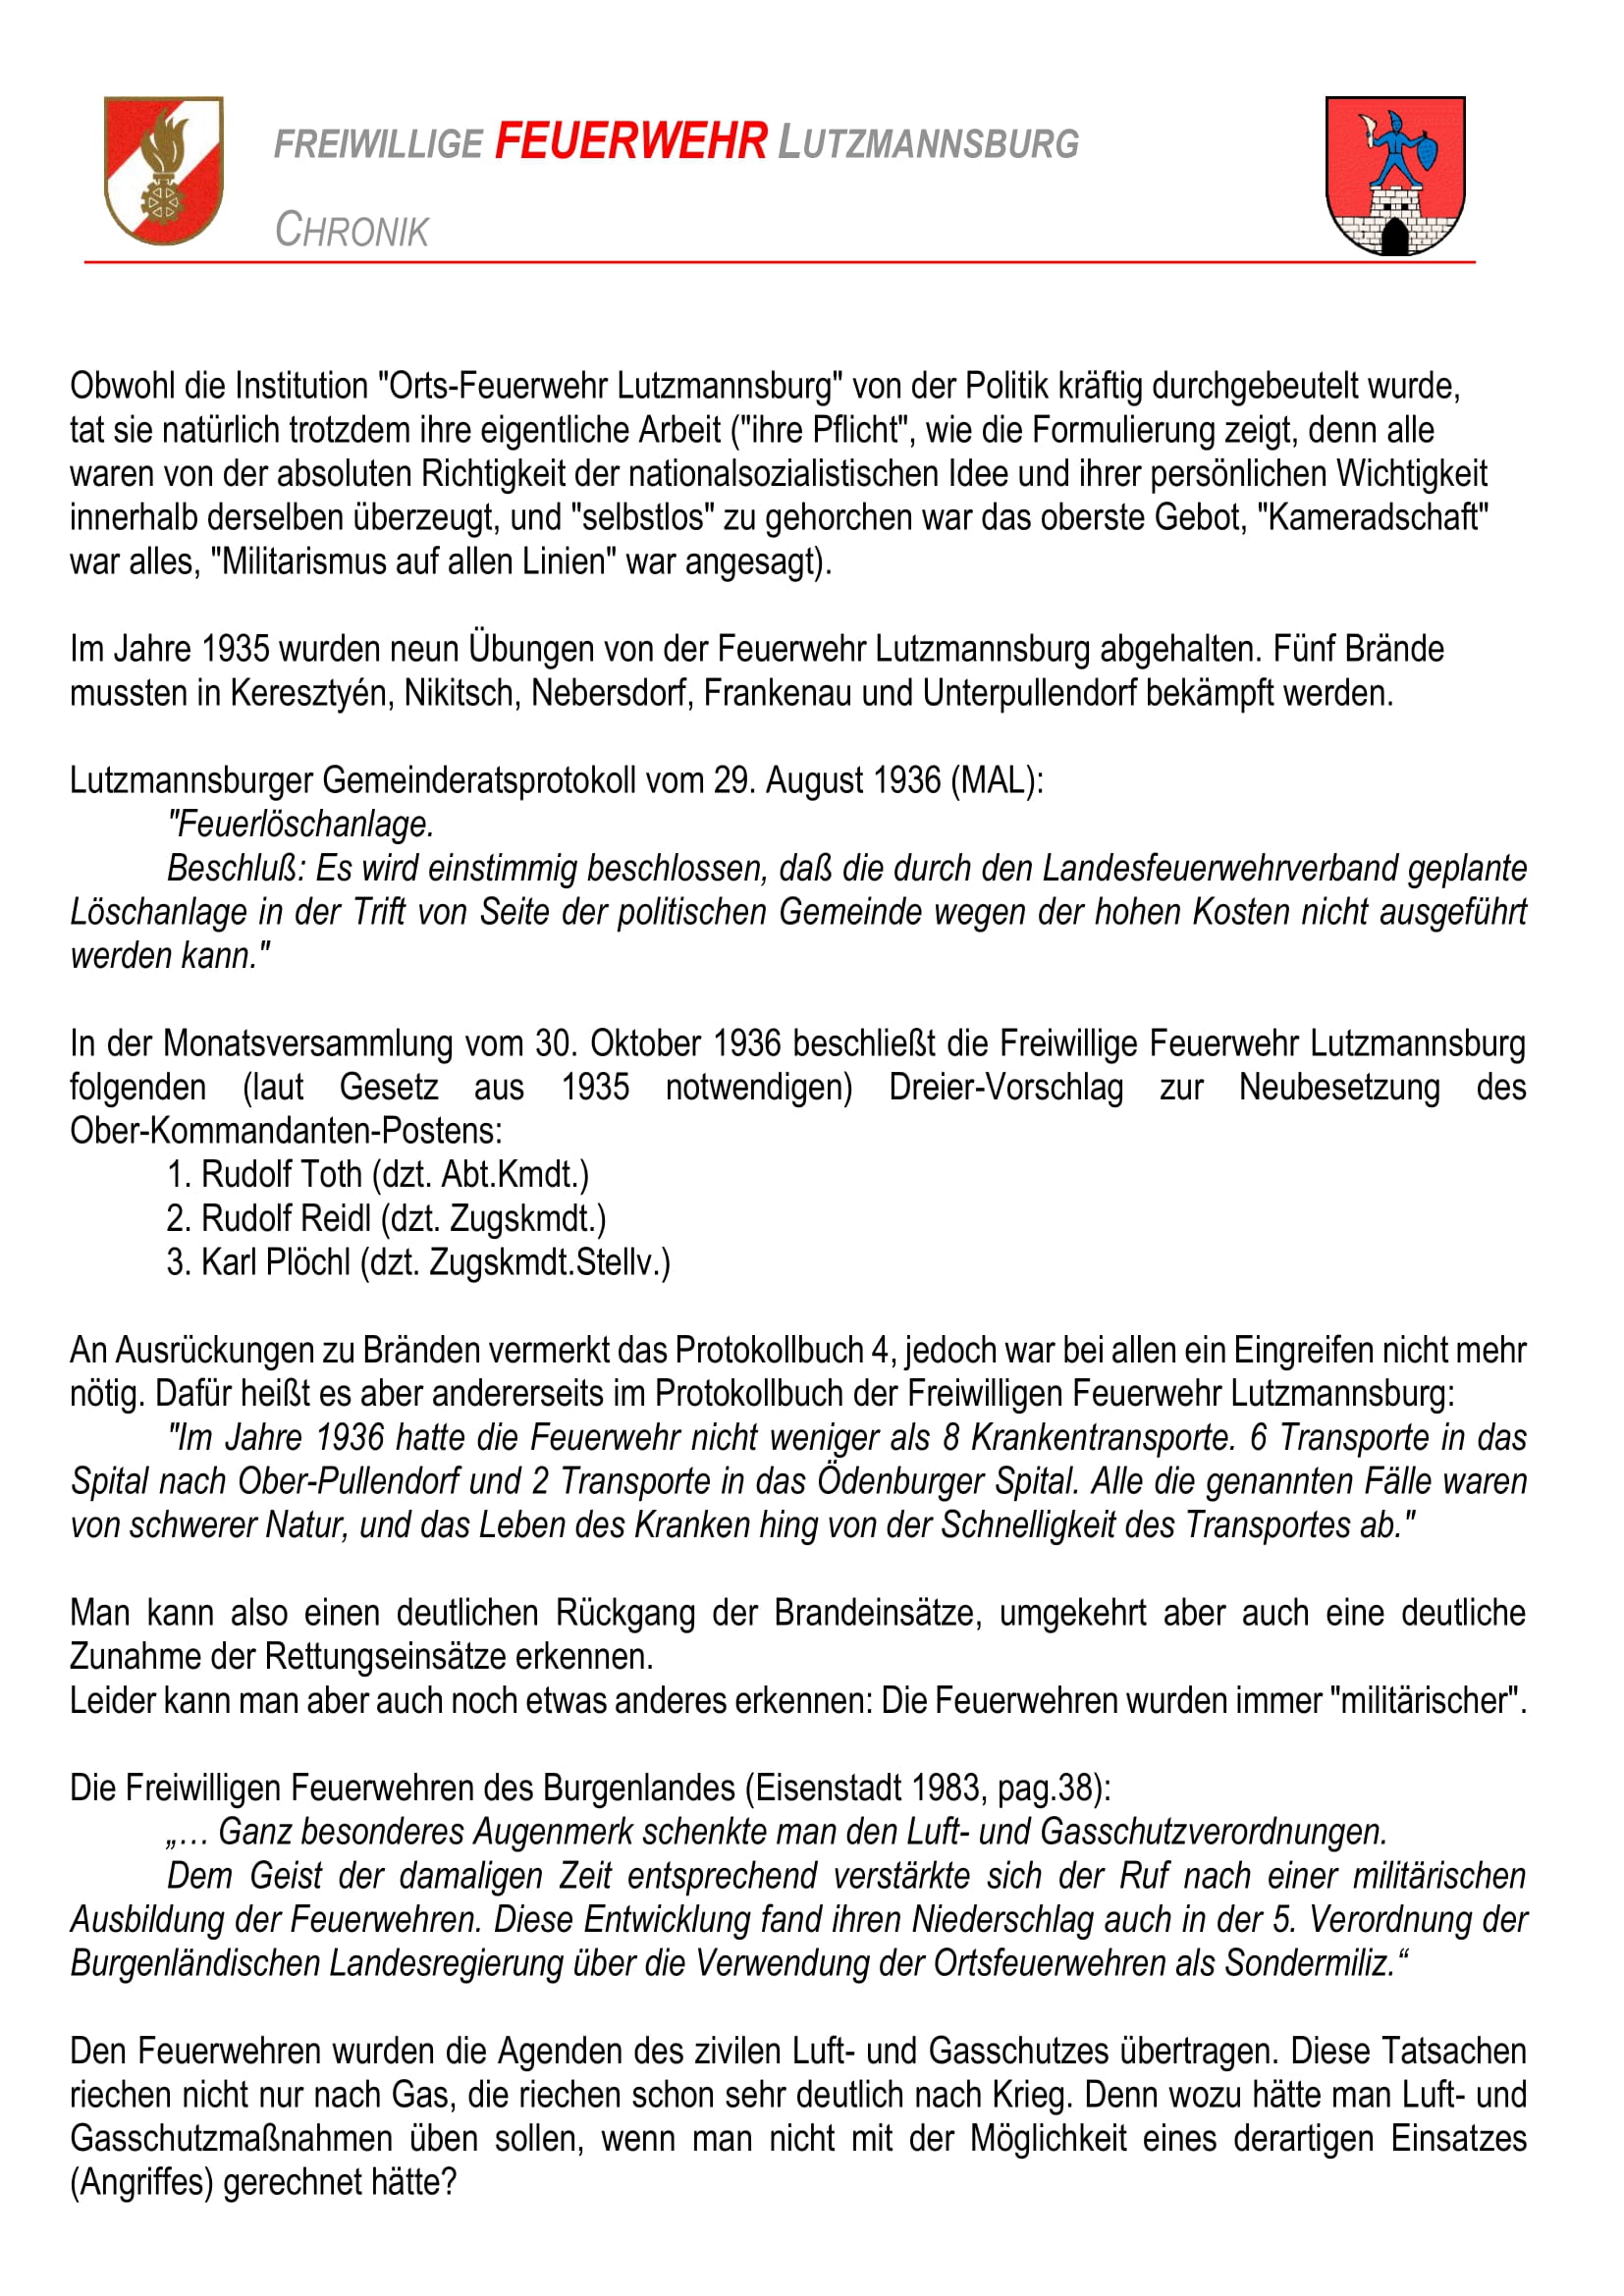 Die Feuerwehr im Nationalsozialismus | Feuerwehr Lutzmannsburg Teil 5